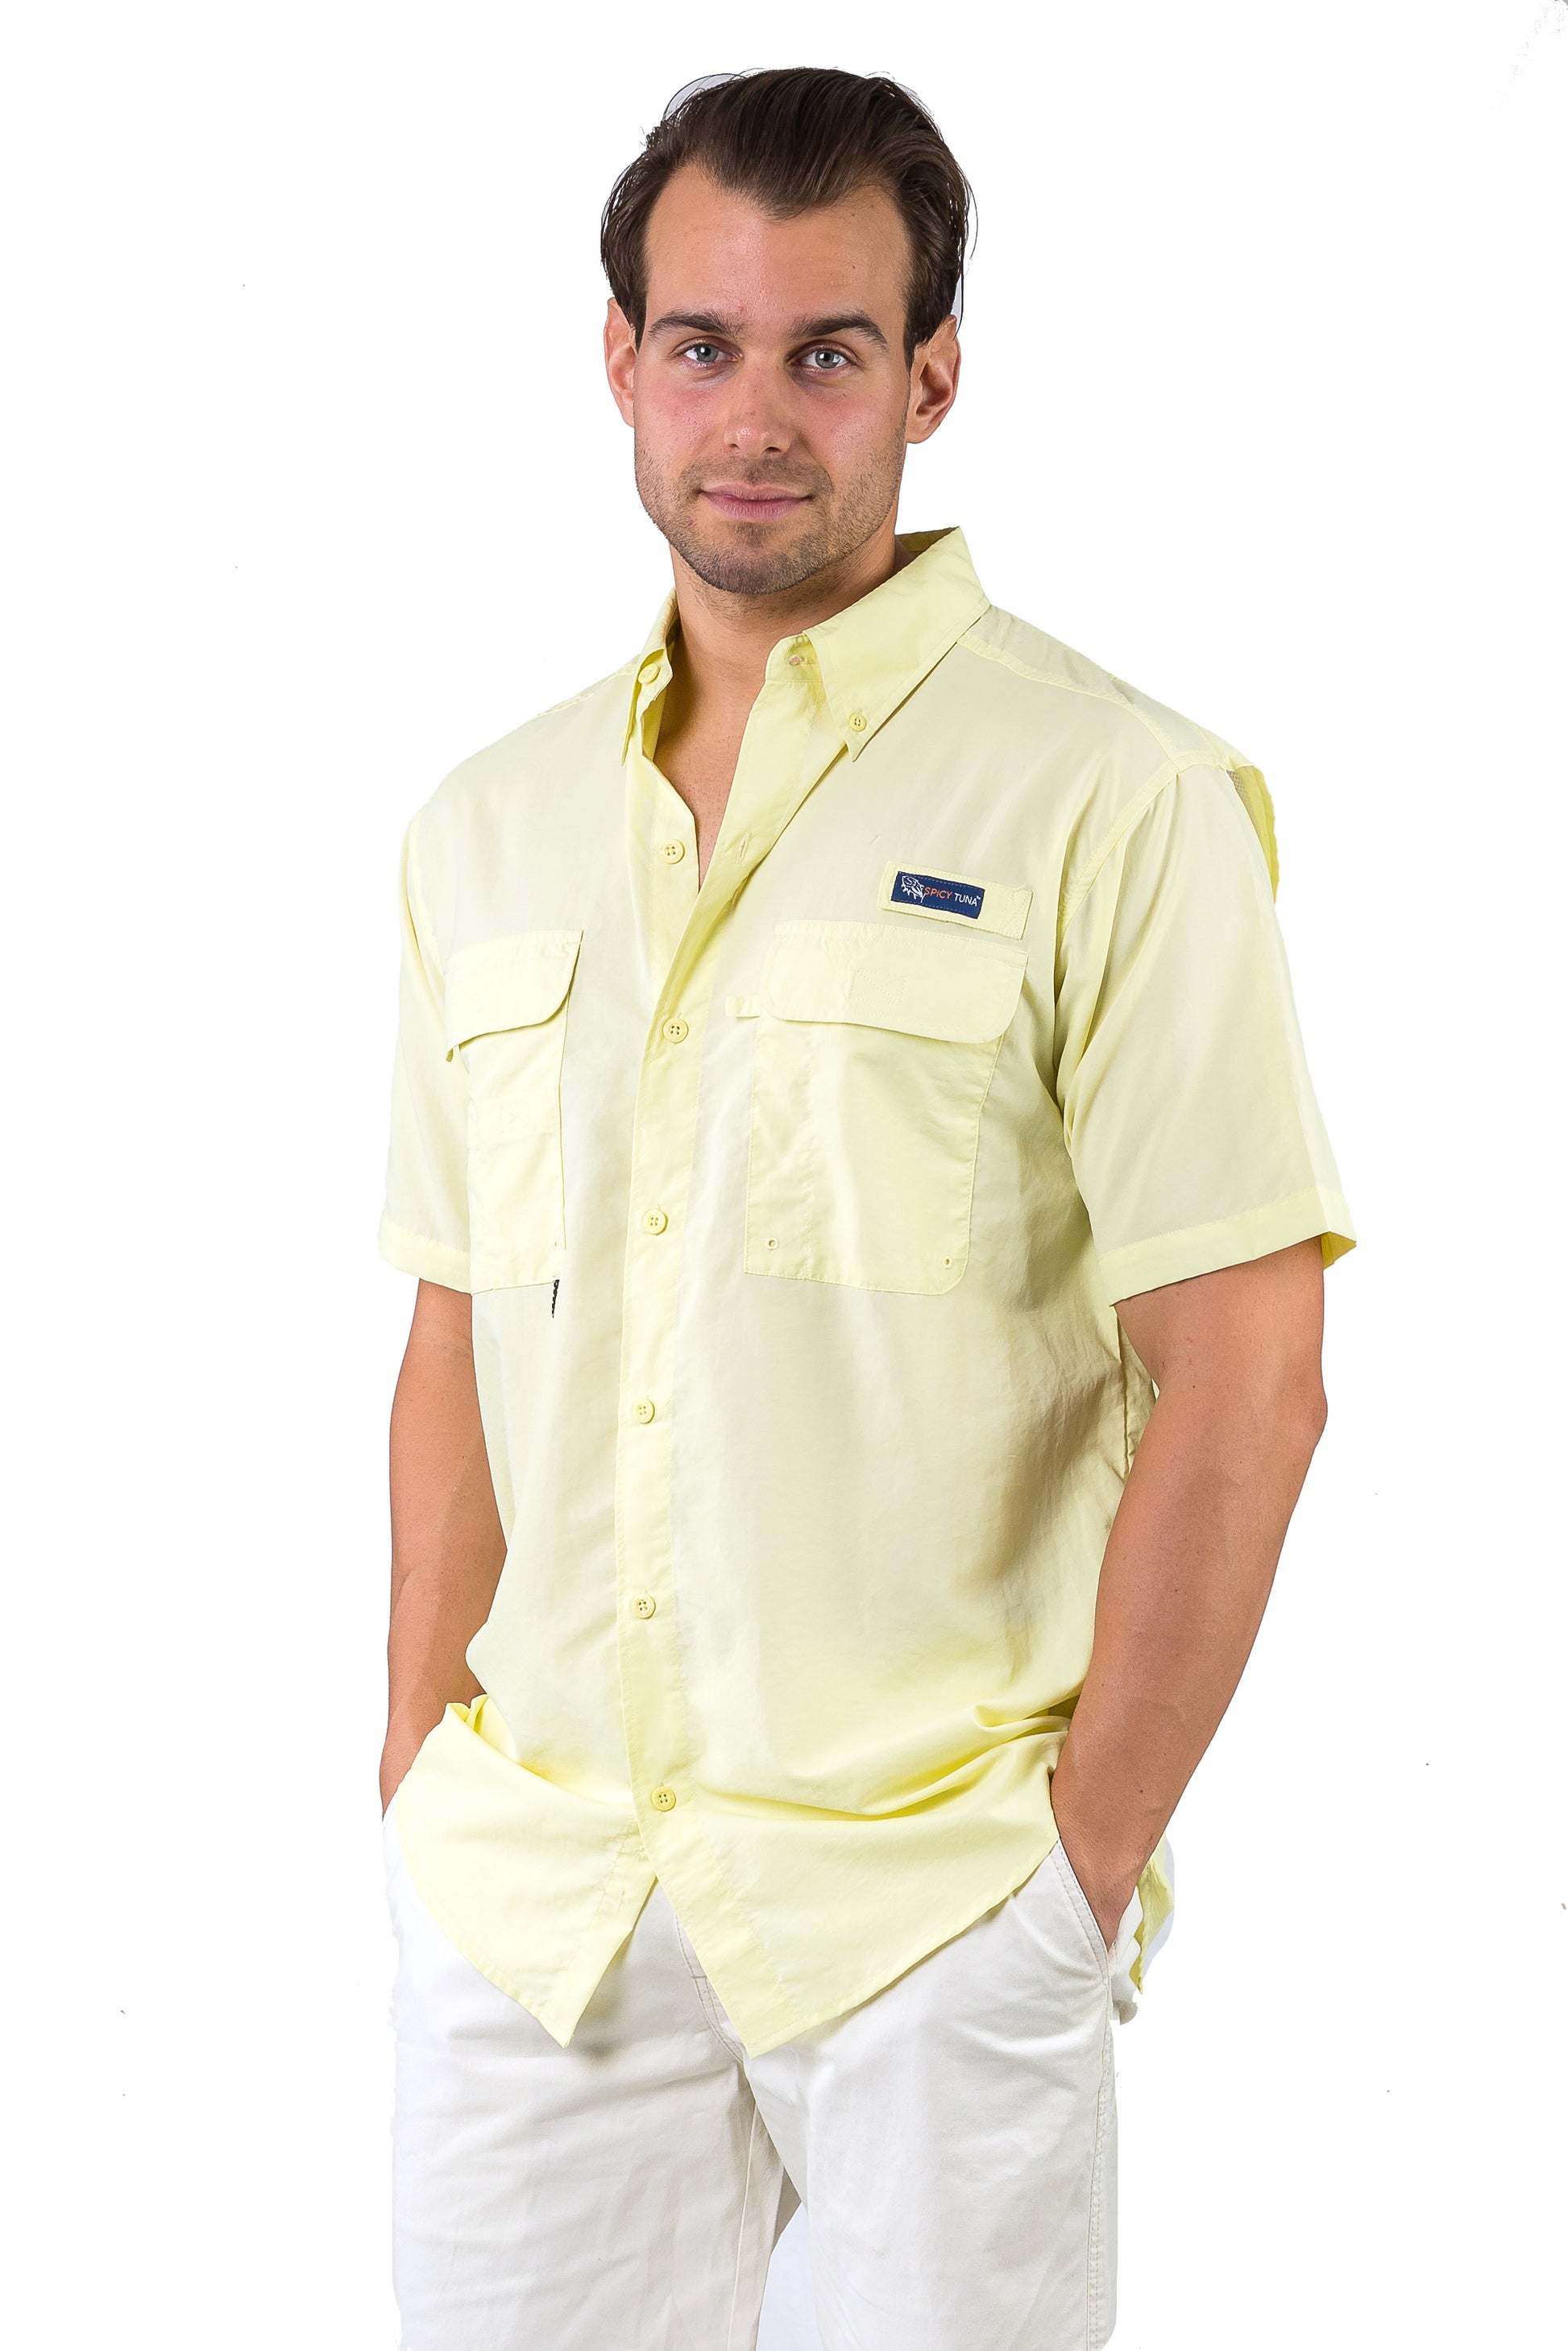 Licensed-Mart Men's Shirt, Short Sleeve, Performance Fishing Shirt